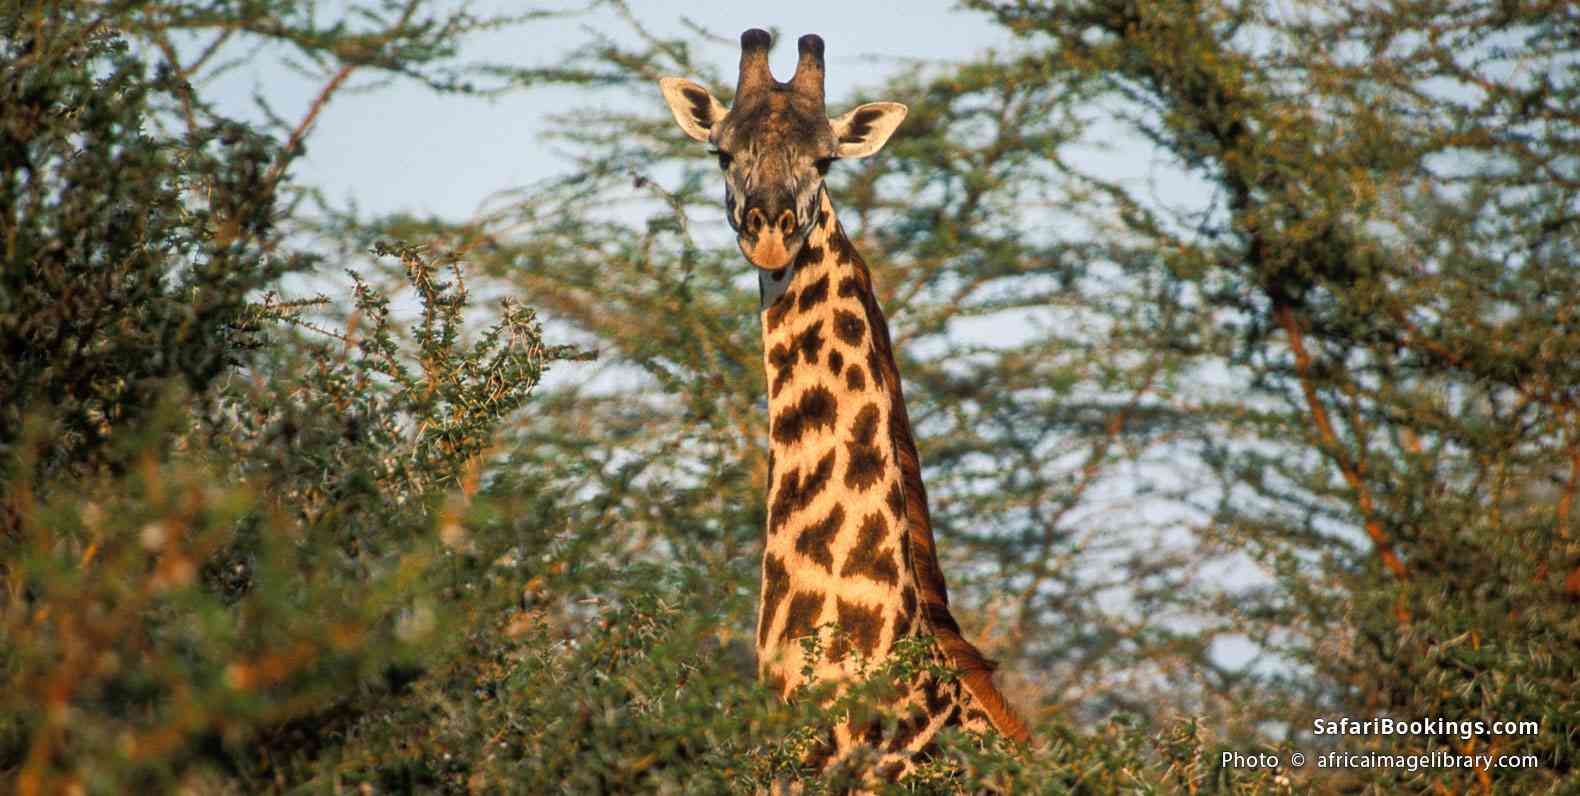 Masai giraffe in the African bush